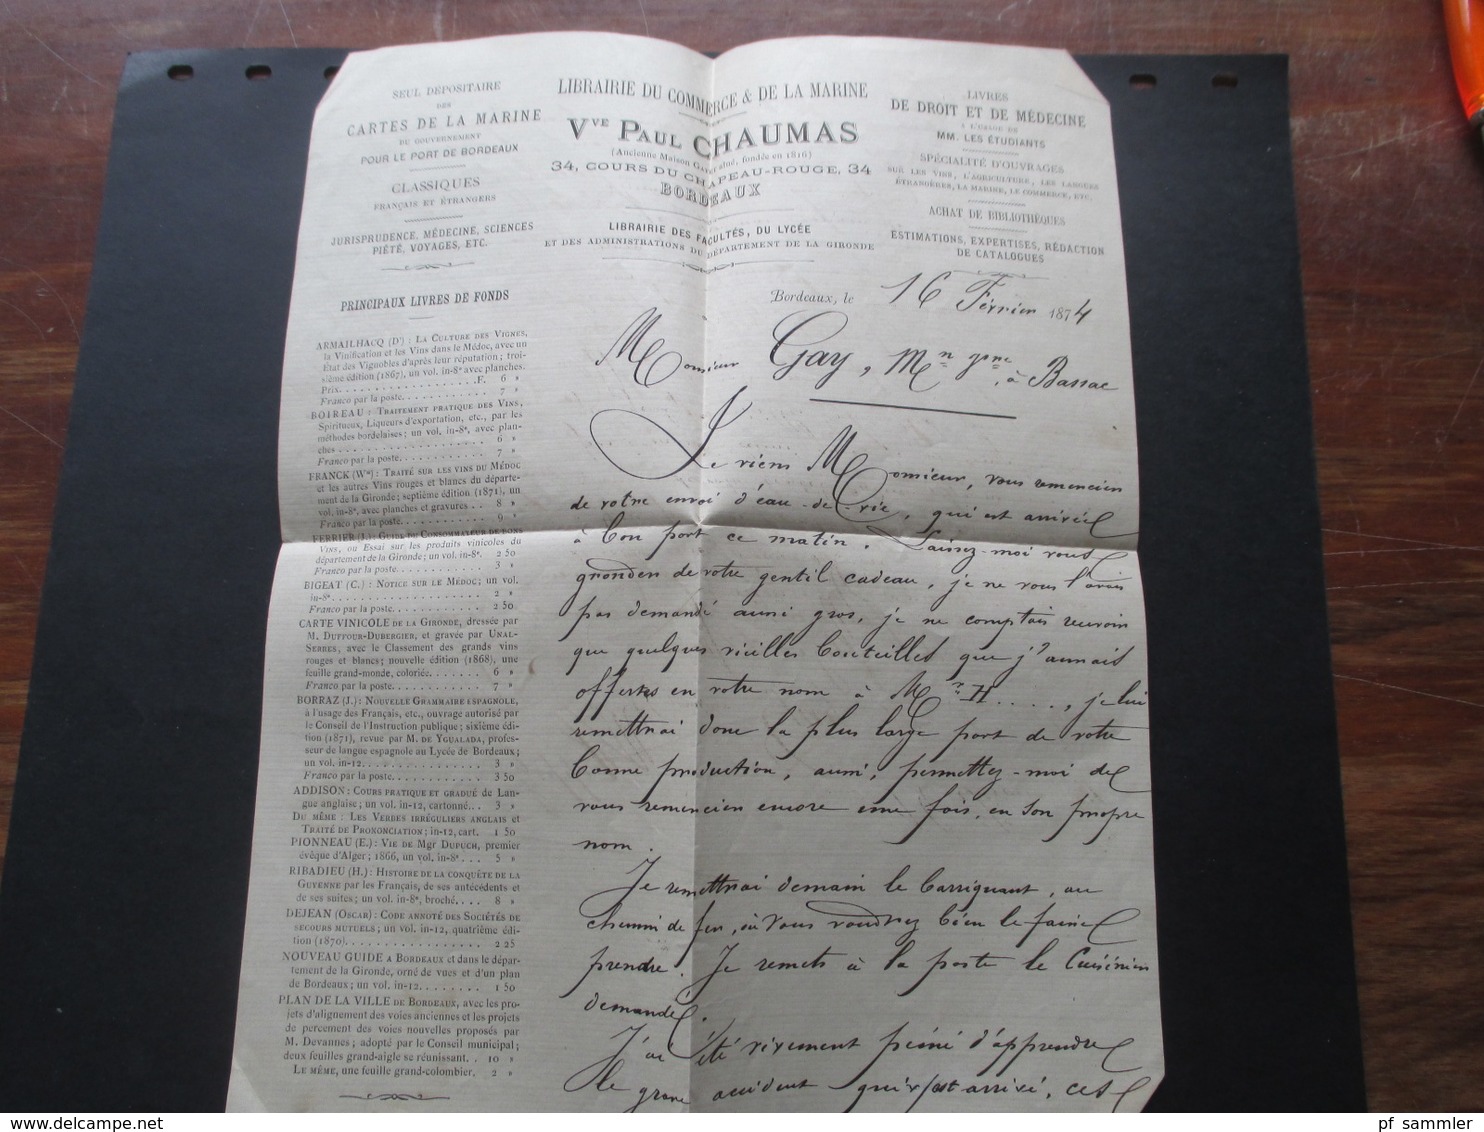 Ceres Nr. 51 EF 1874 Brief mit Inhalt Libraire du Commerce & de la Marine Paul Chaumas Bordeaux nach Bassac Charente